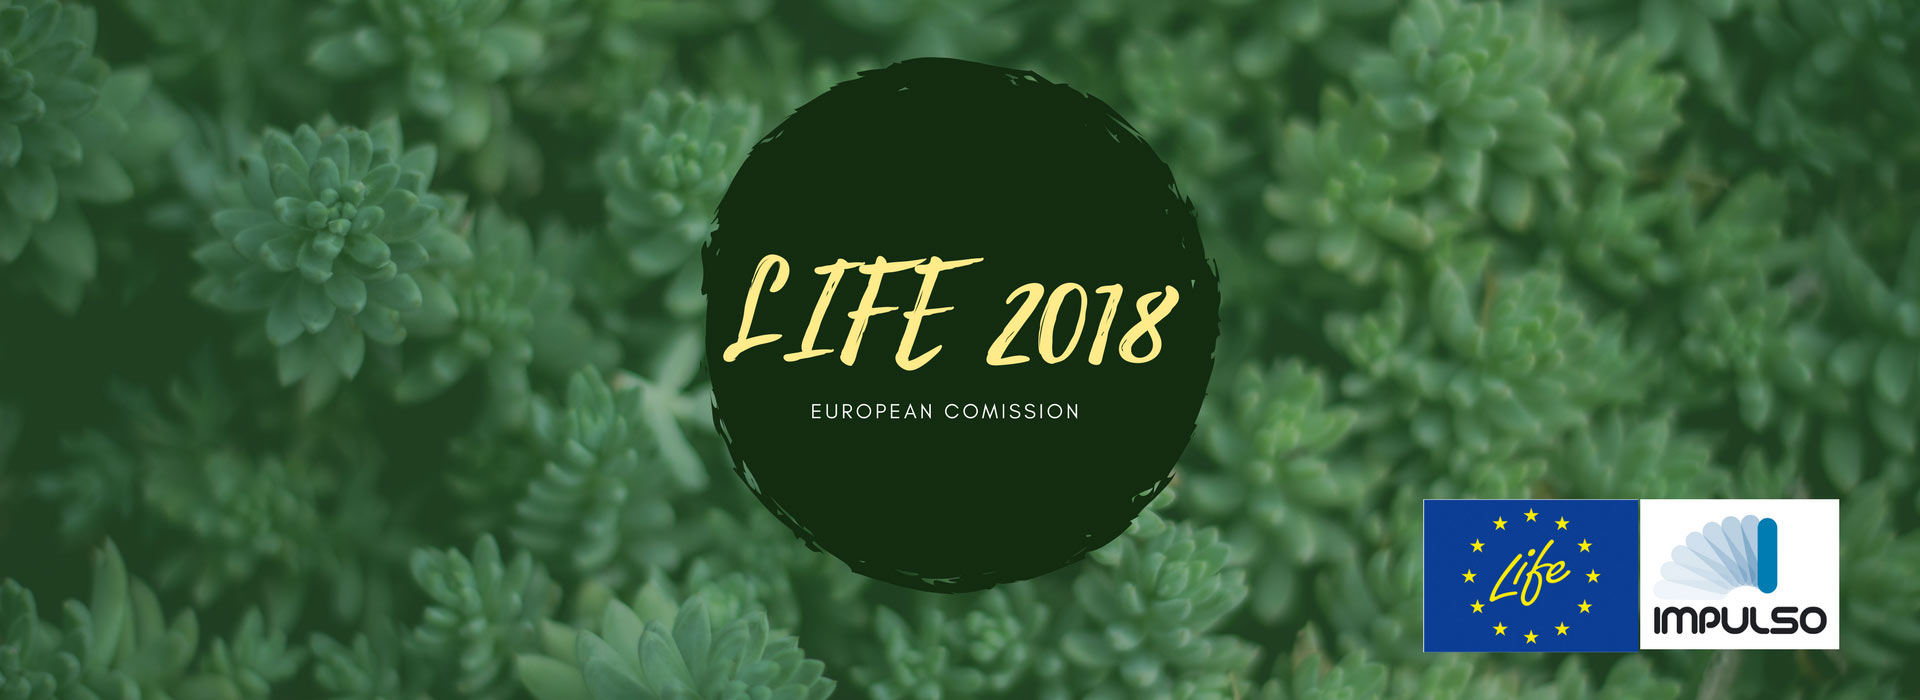 Convocatoria LIFE 2018 de la Comisión Europea